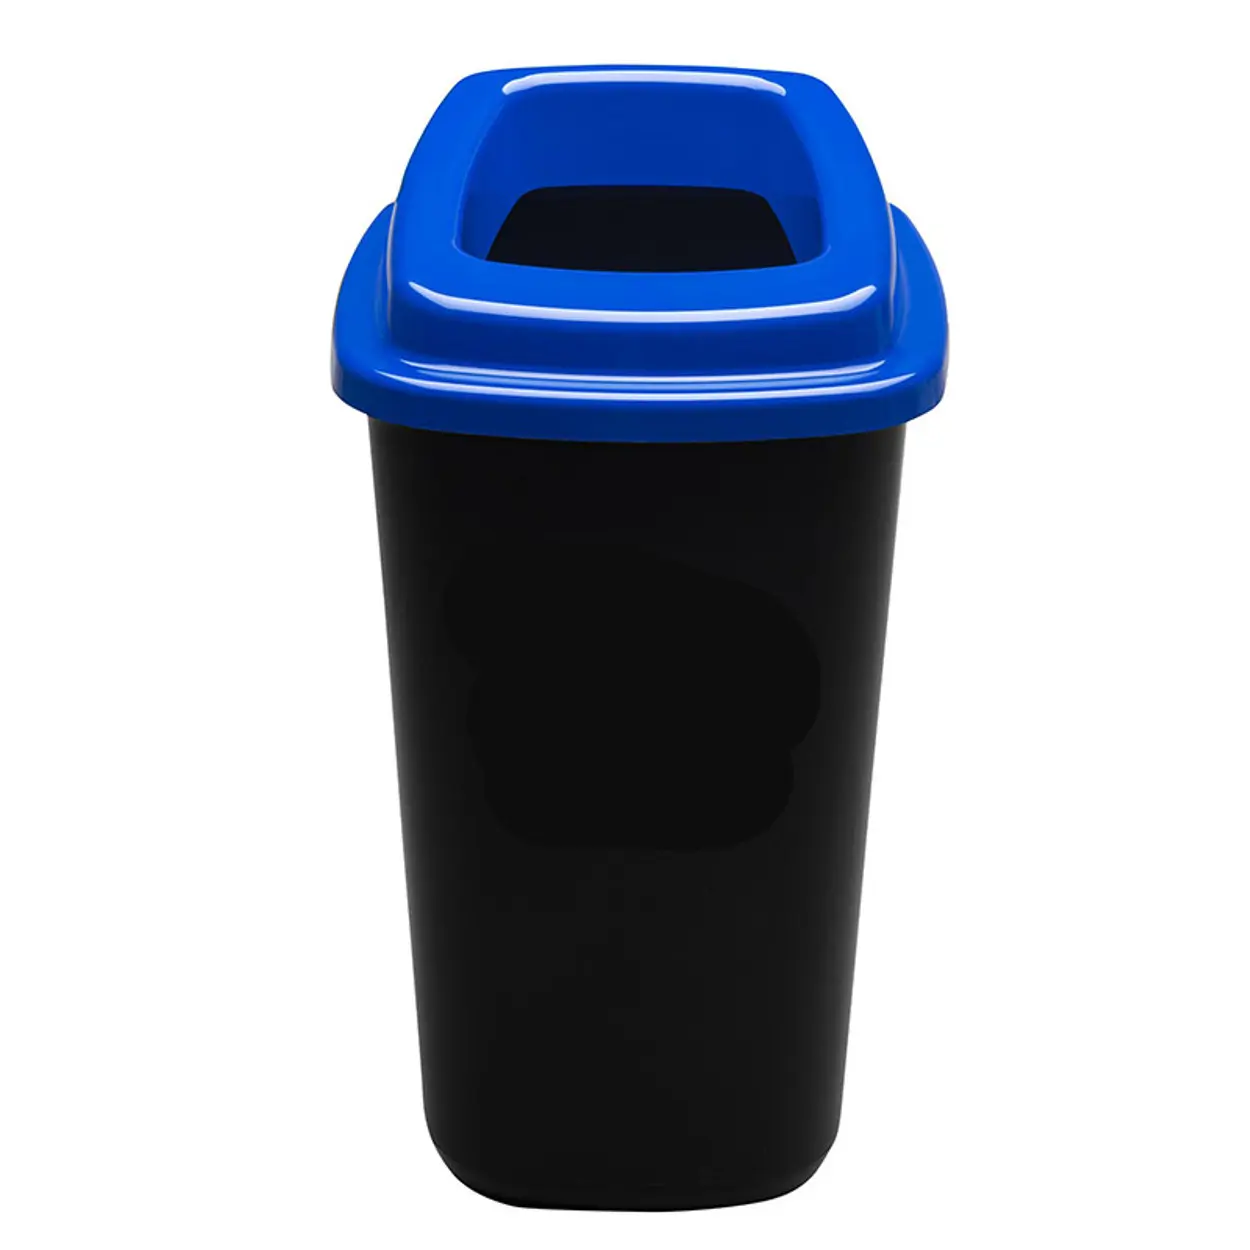 Plastikowy kosz do segregacji śmieci, 45 l, niebieski